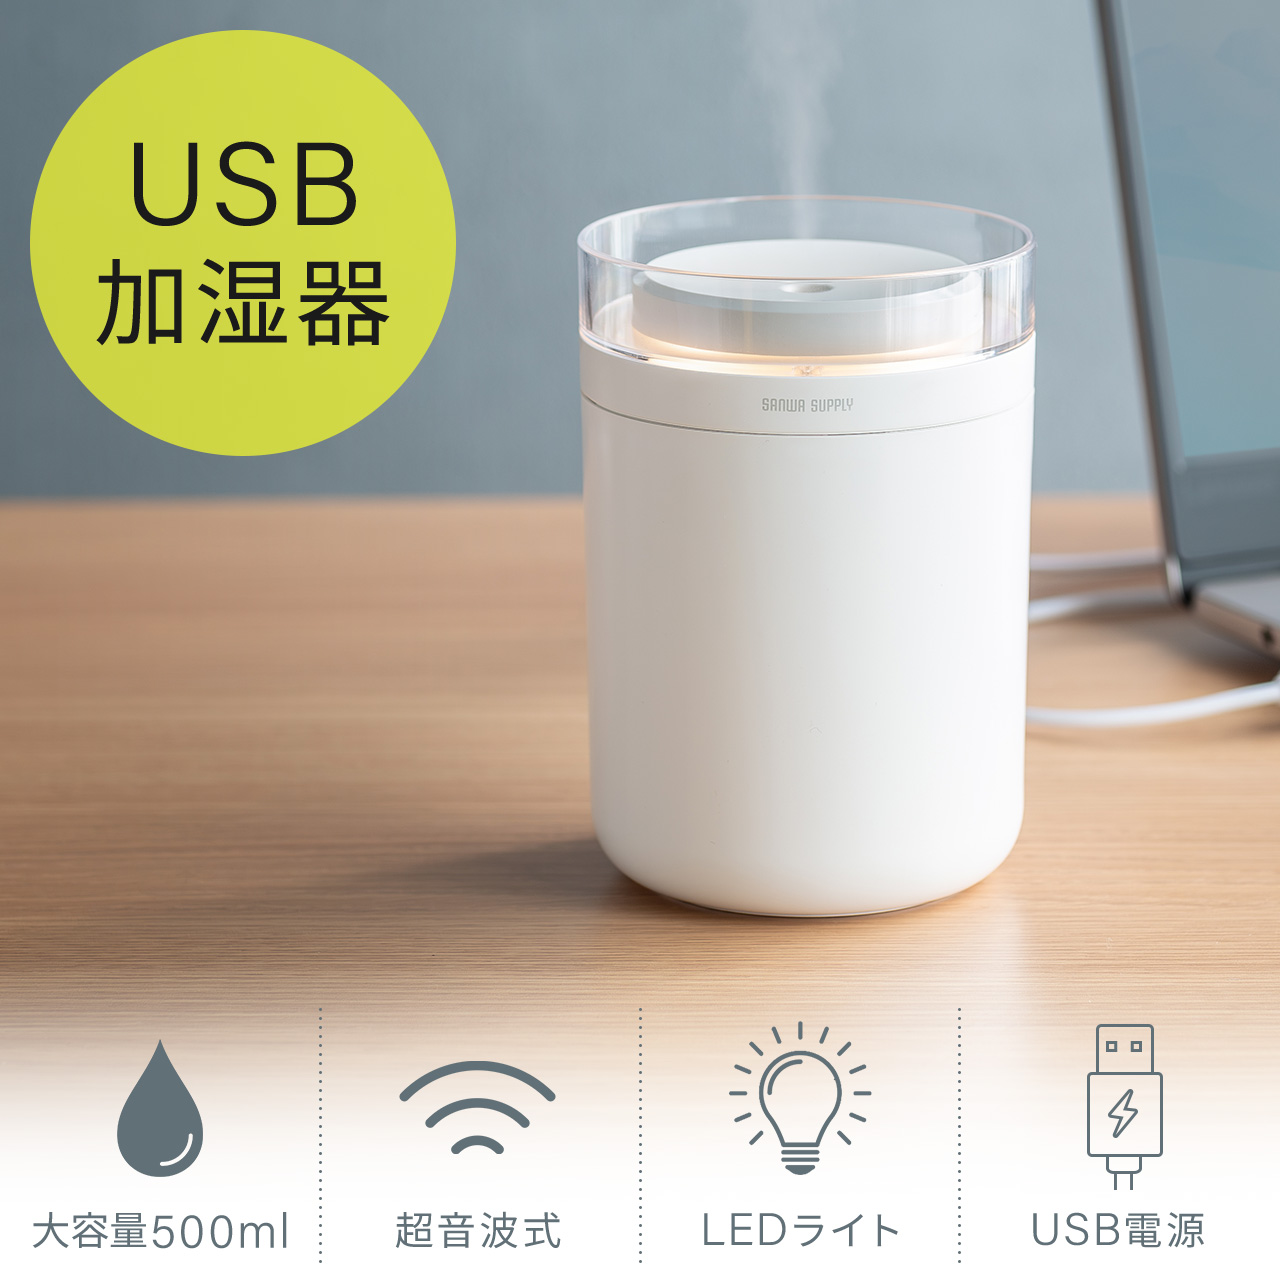 卓上加湿器 超音波式 USB給電 DIY可能 可愛い加湿器 600ml - 加湿器